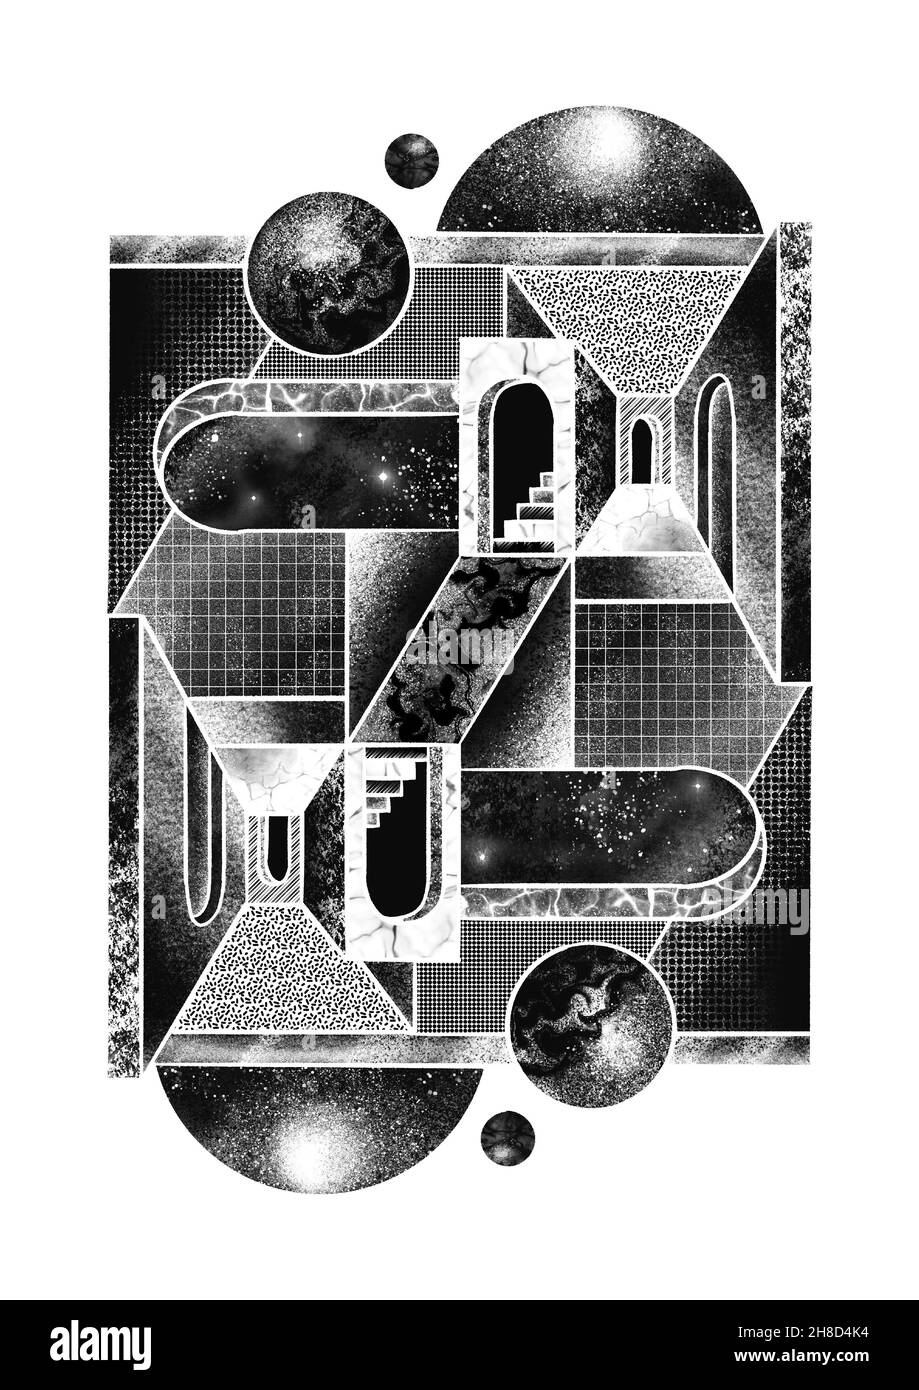 Isométrique noir et blanc M.C. Escher style Photo Stock - Alamy